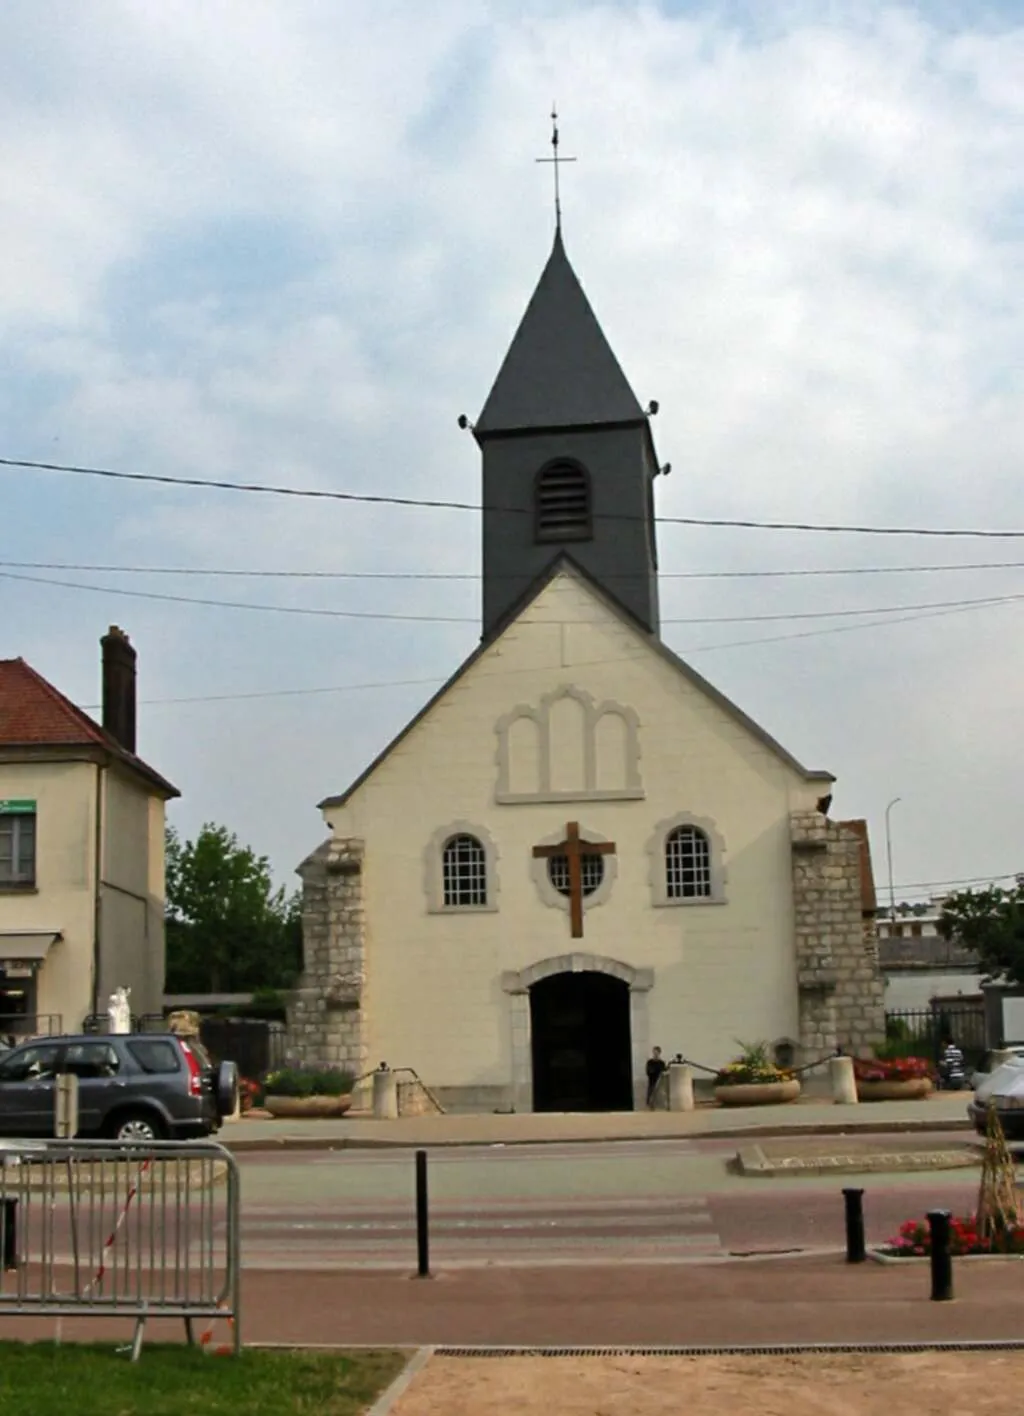 Image of Bonnières-sur-Seine